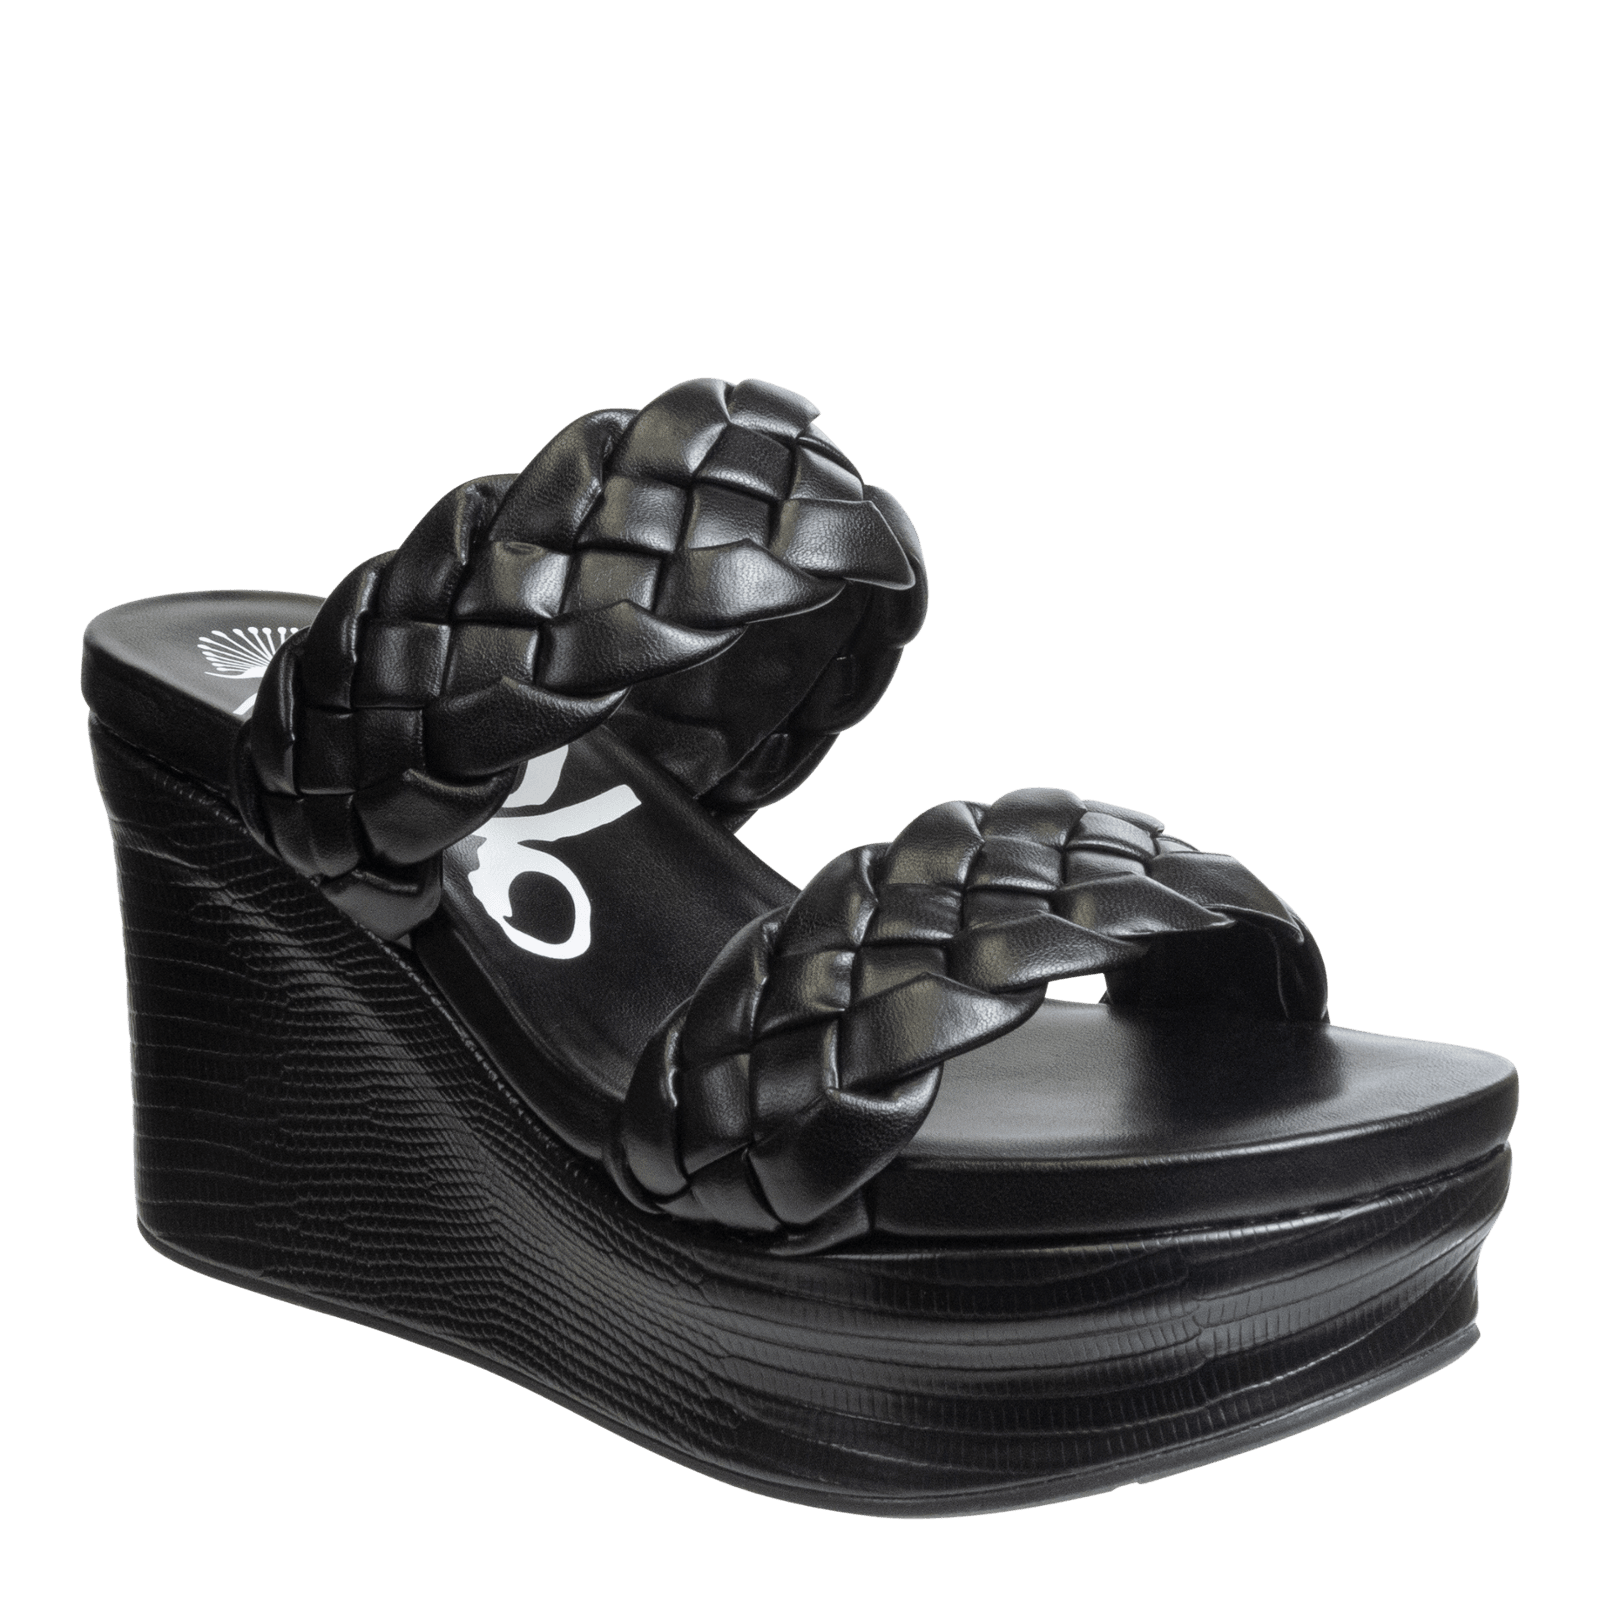 OTBT - FLUENT in BLACK Wedge Sandals WOMEN FOOTWEAR OTBT 